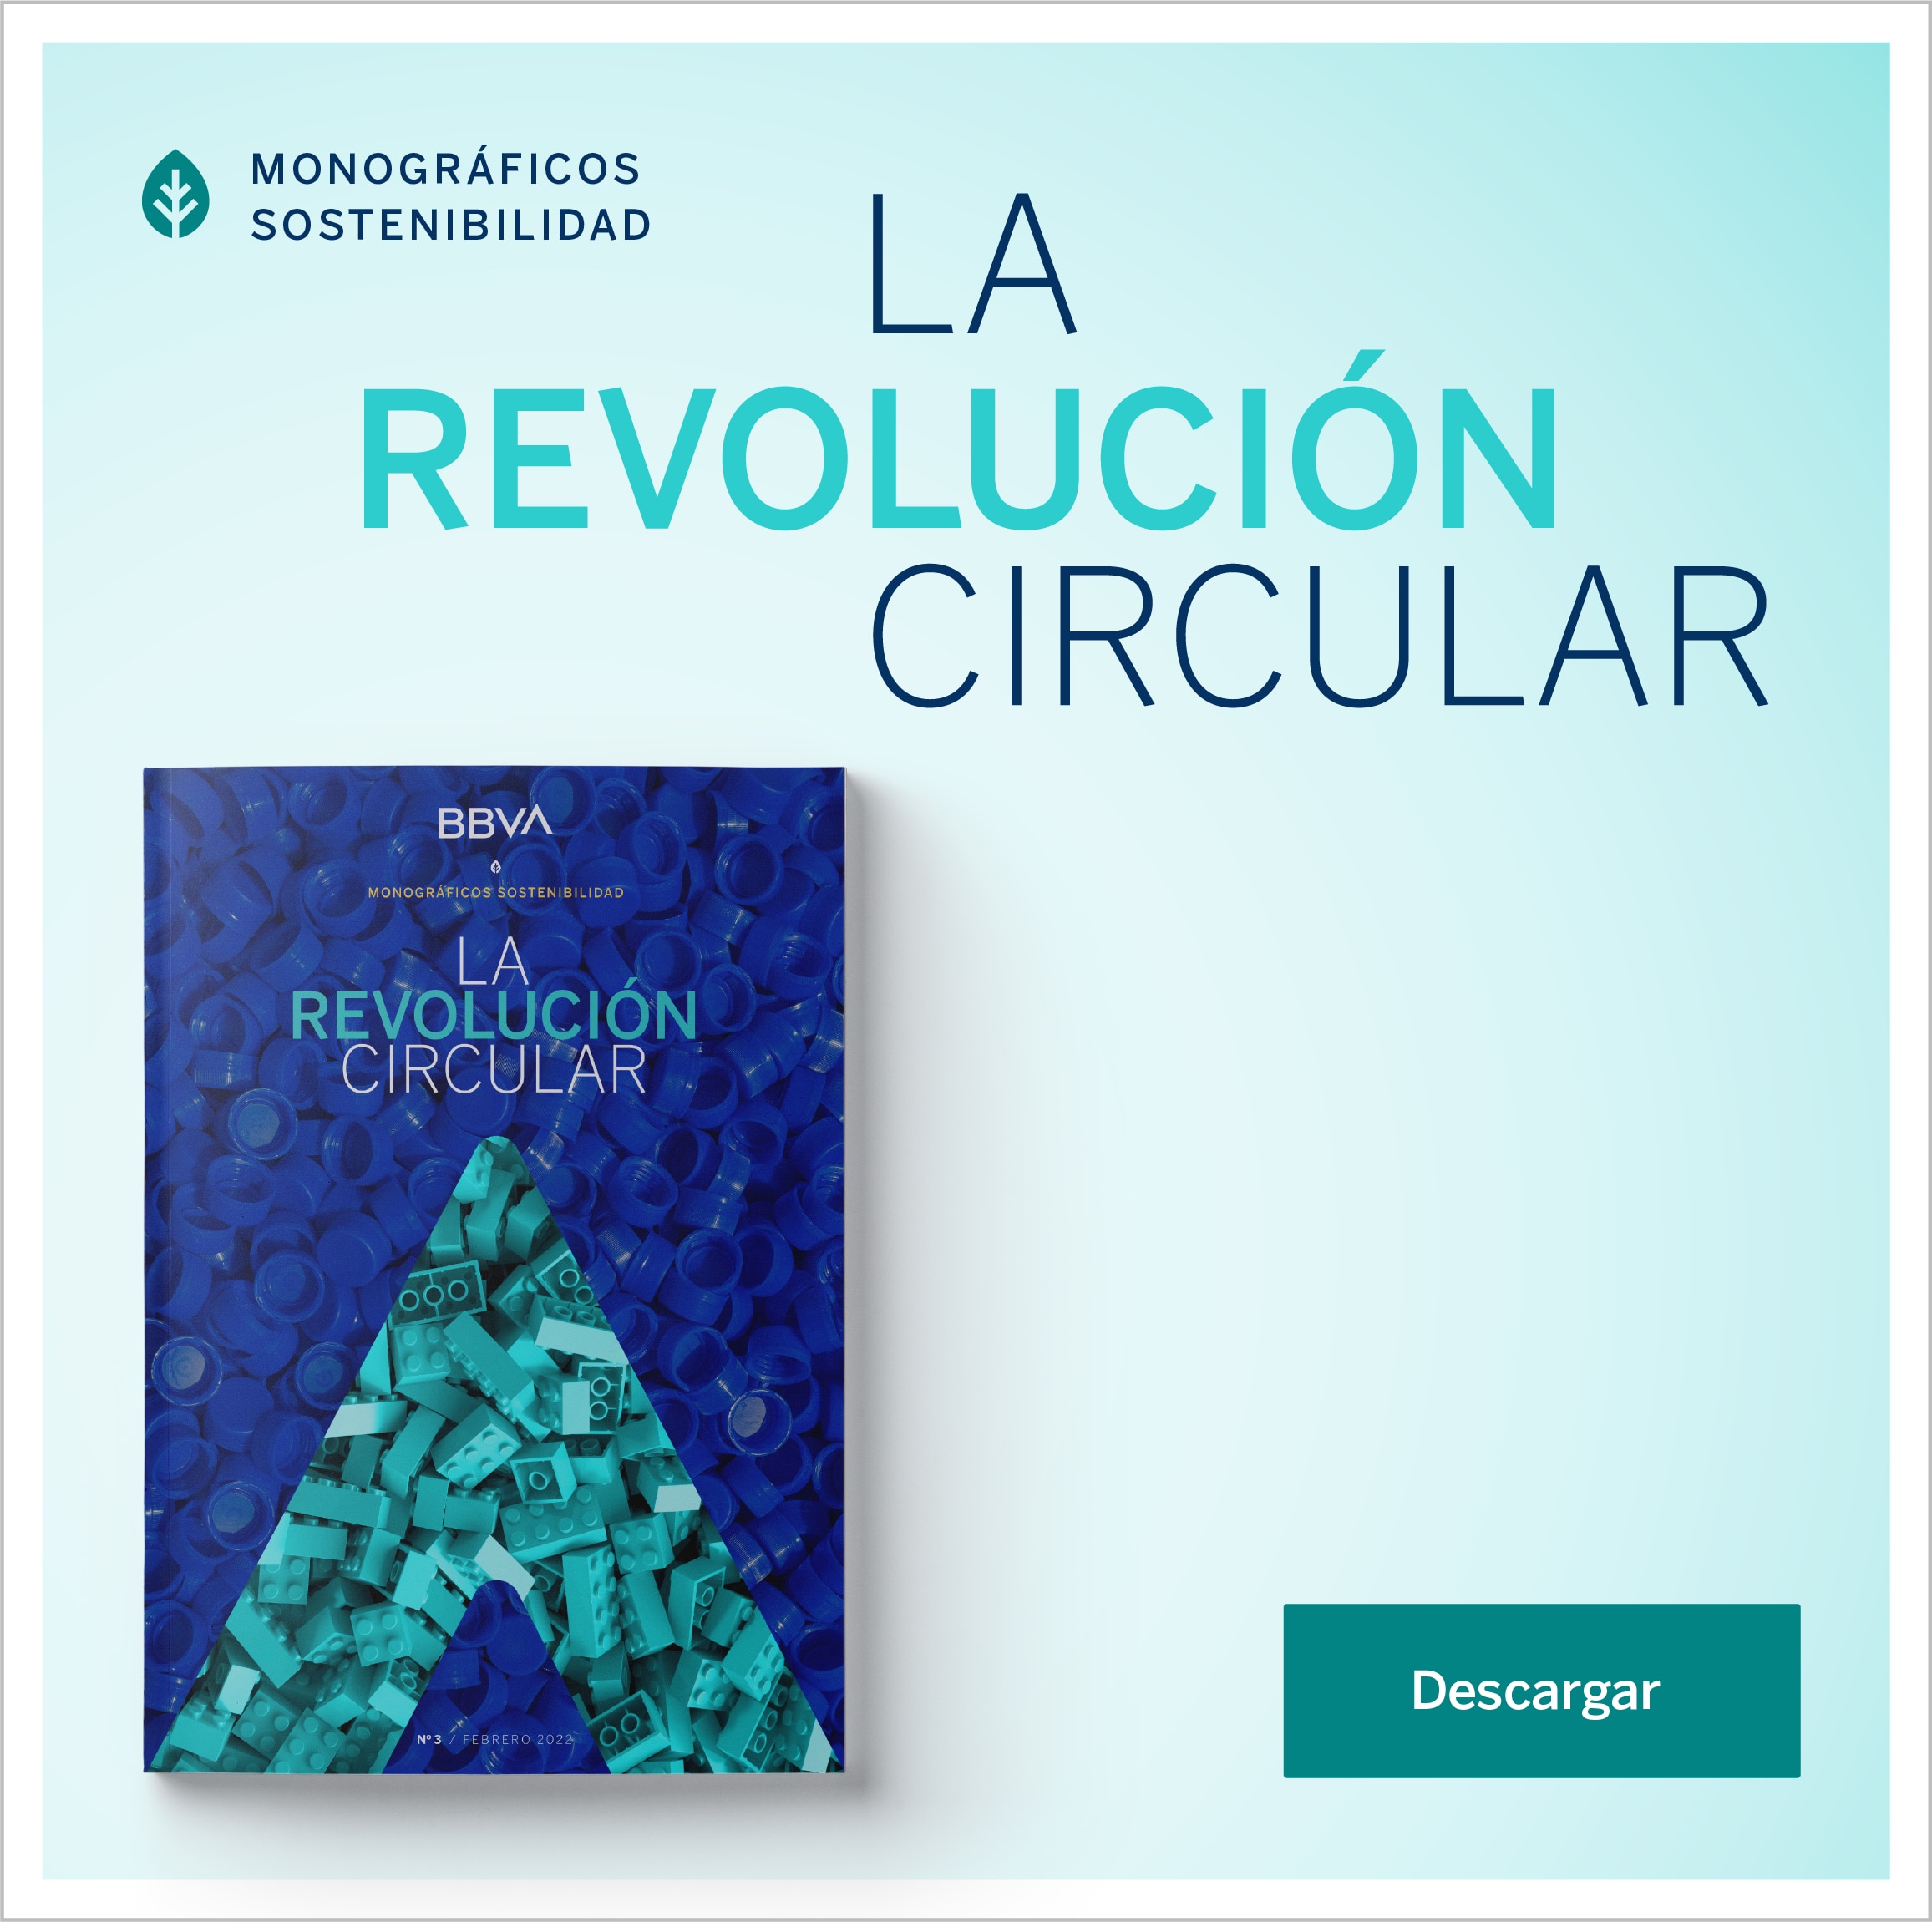 Descarga de forma gratuita el monográfico 'La revolución circular'